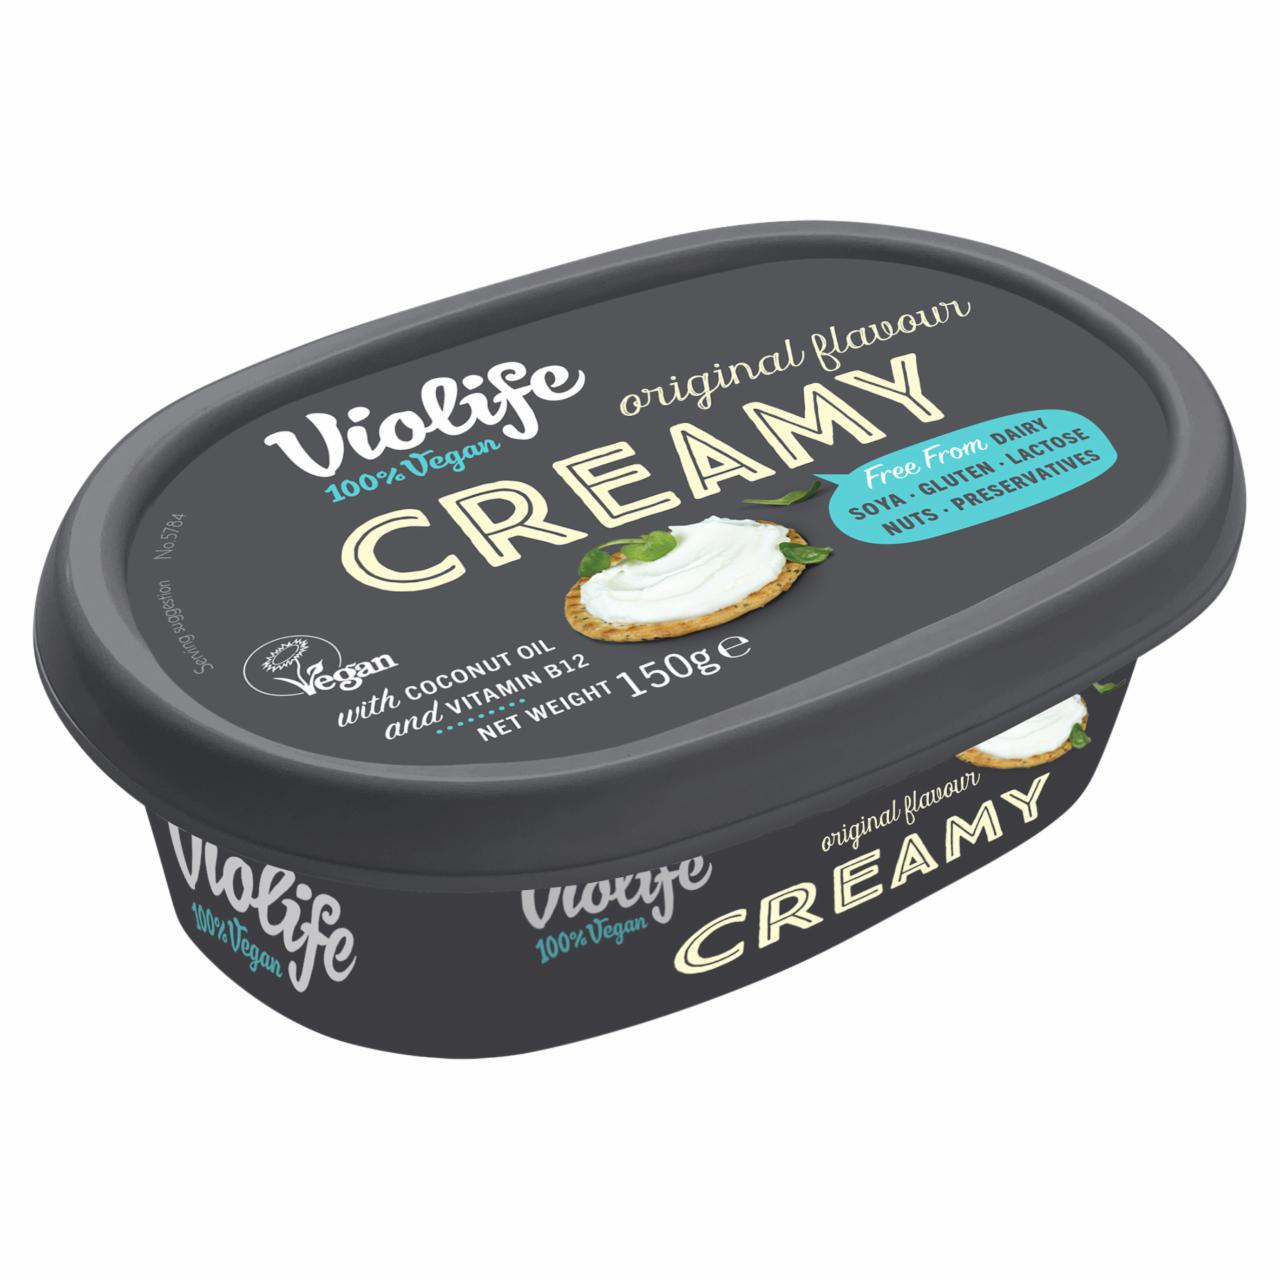 Képek - Violife Creamy Original kókuszolajjal készült ételkészítmény 150 g